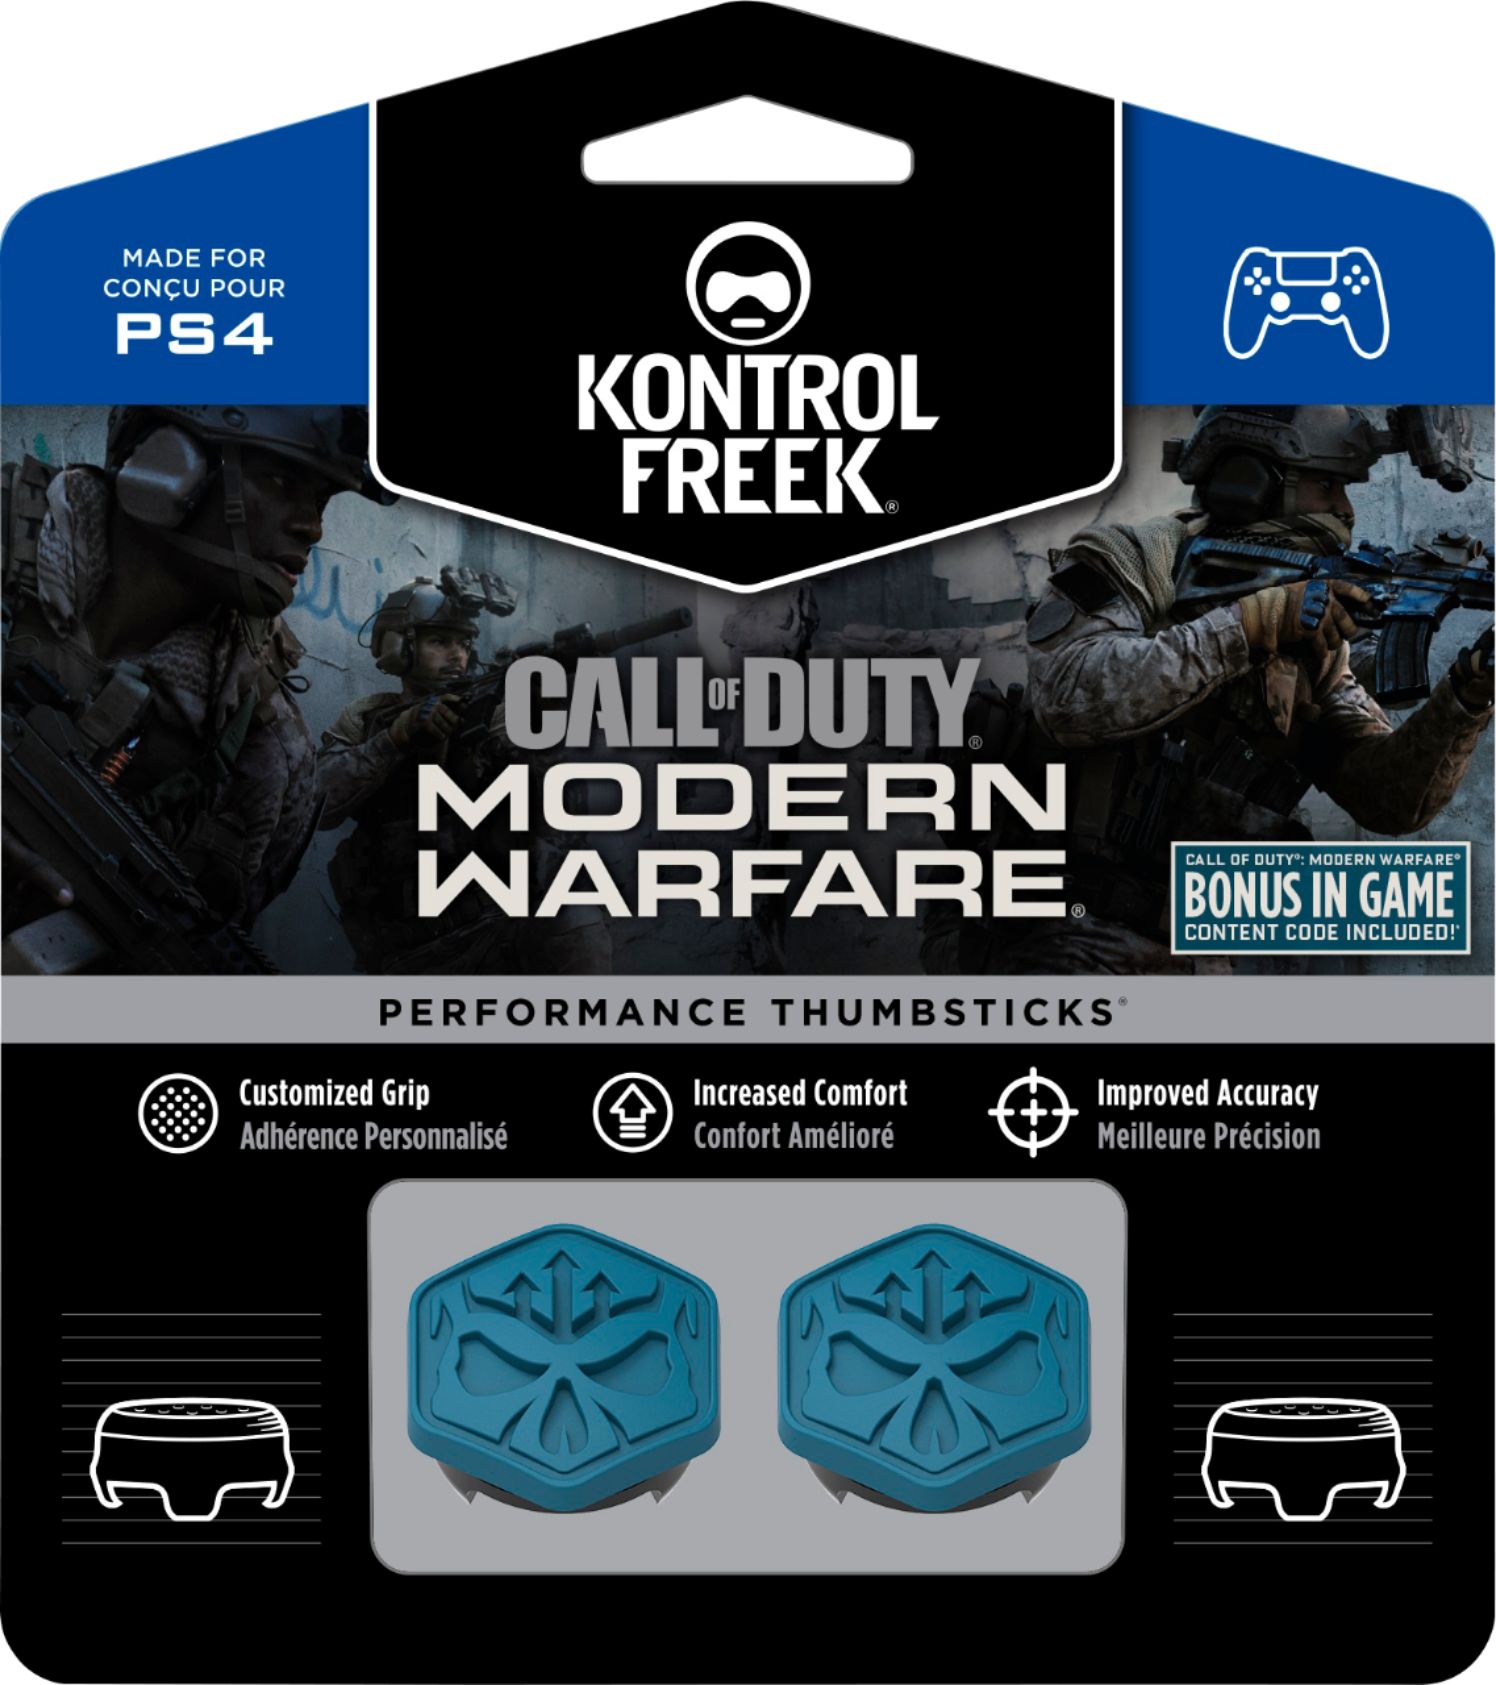 KontrolFreek Call of Duty: Modern Warfare Performance - Best Buy